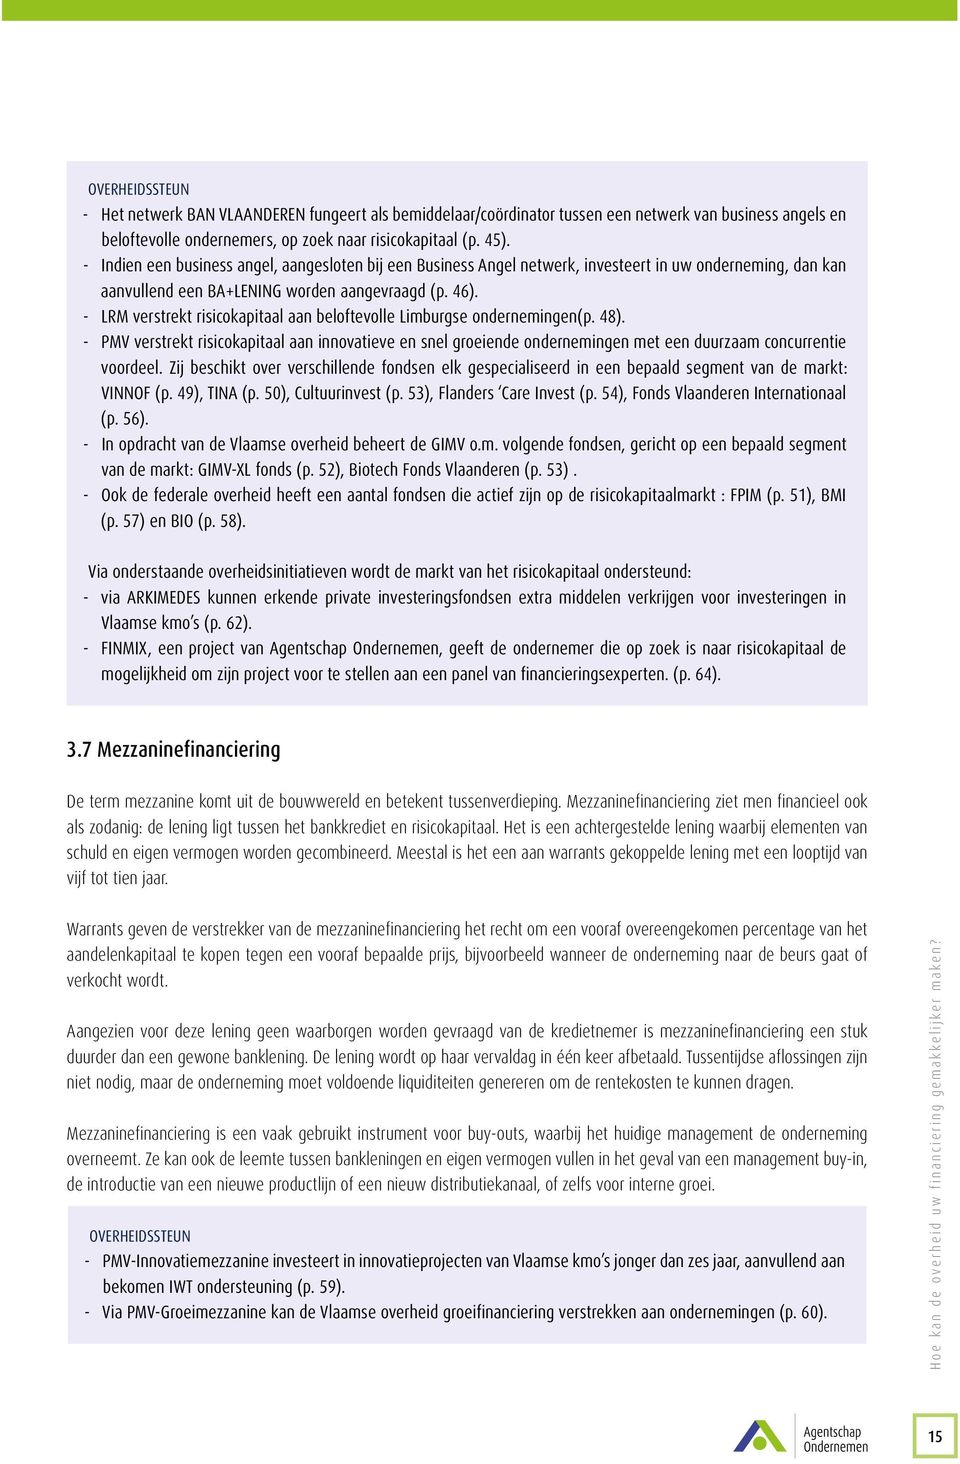 -- LRM verstrekt risicokapitaal aan beloftevolle Limburgse ondernemingen(p. 48). -- PMV verstrekt risicokapitaal aan innovatieve en snel groeiende ondernemingen met een duurzaam concurrentie voordeel.